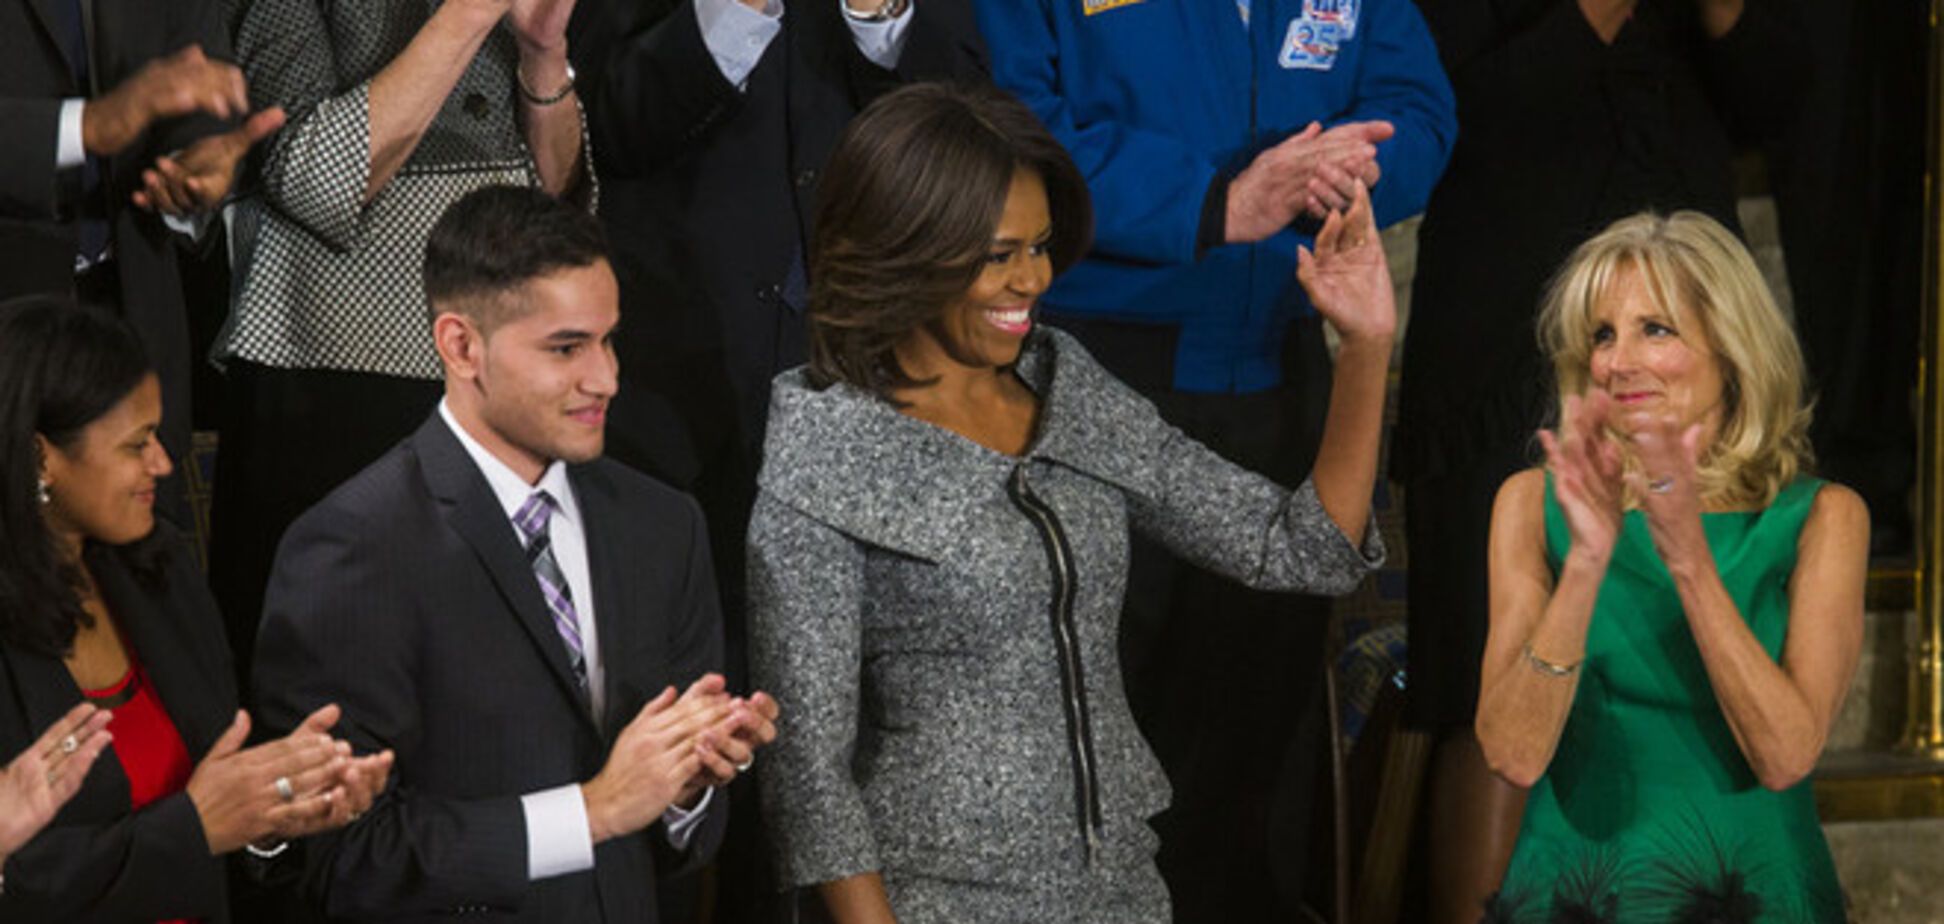 Мишель Обама слушала выступление супруга в Конгрессе США в костюме 'Правильной жены'. Фотофакт